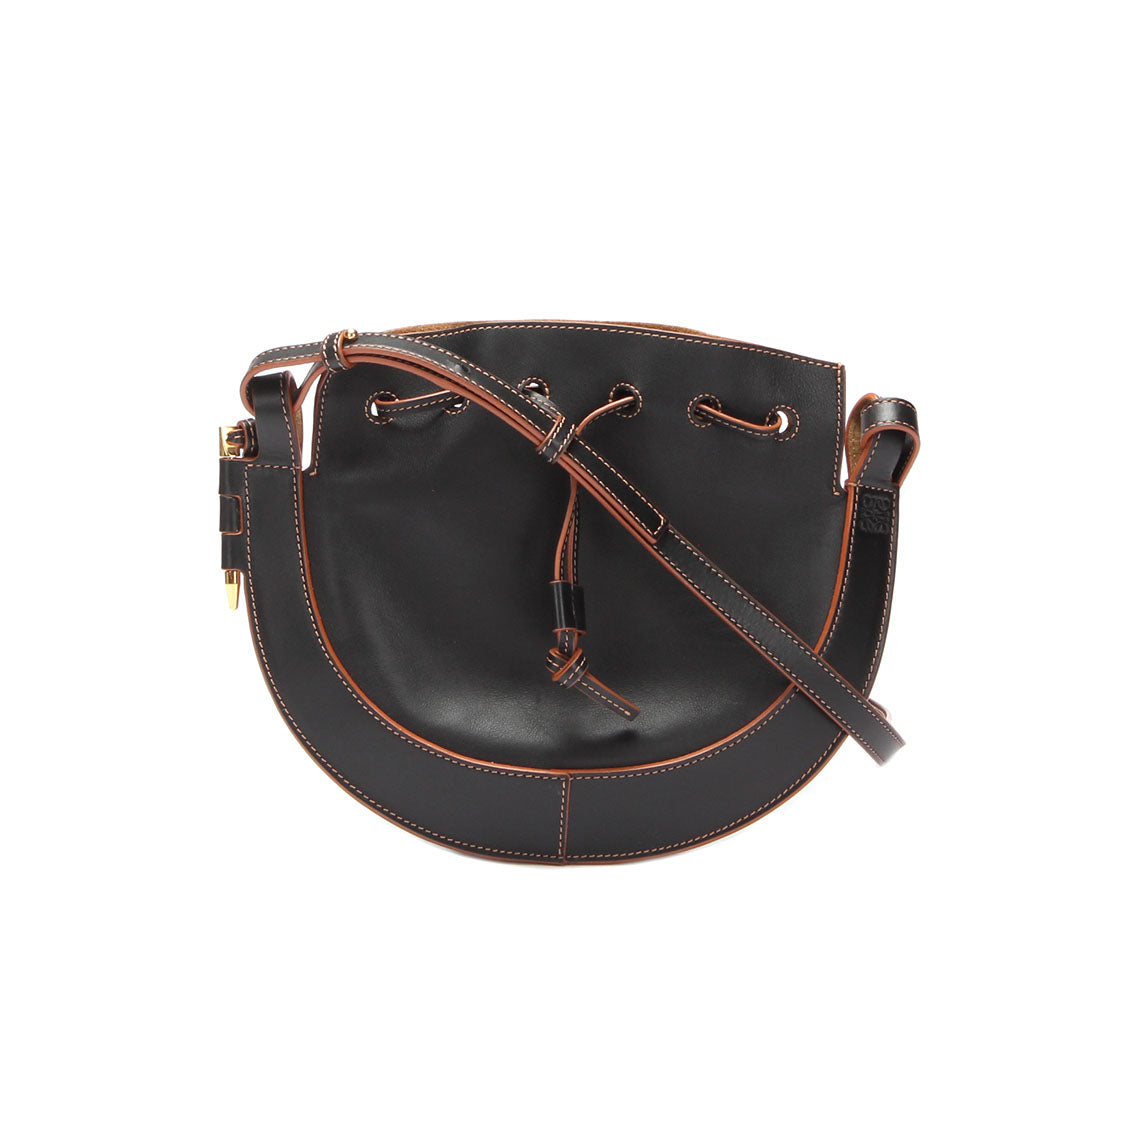 Leather Horseshoe Crossbody Bag